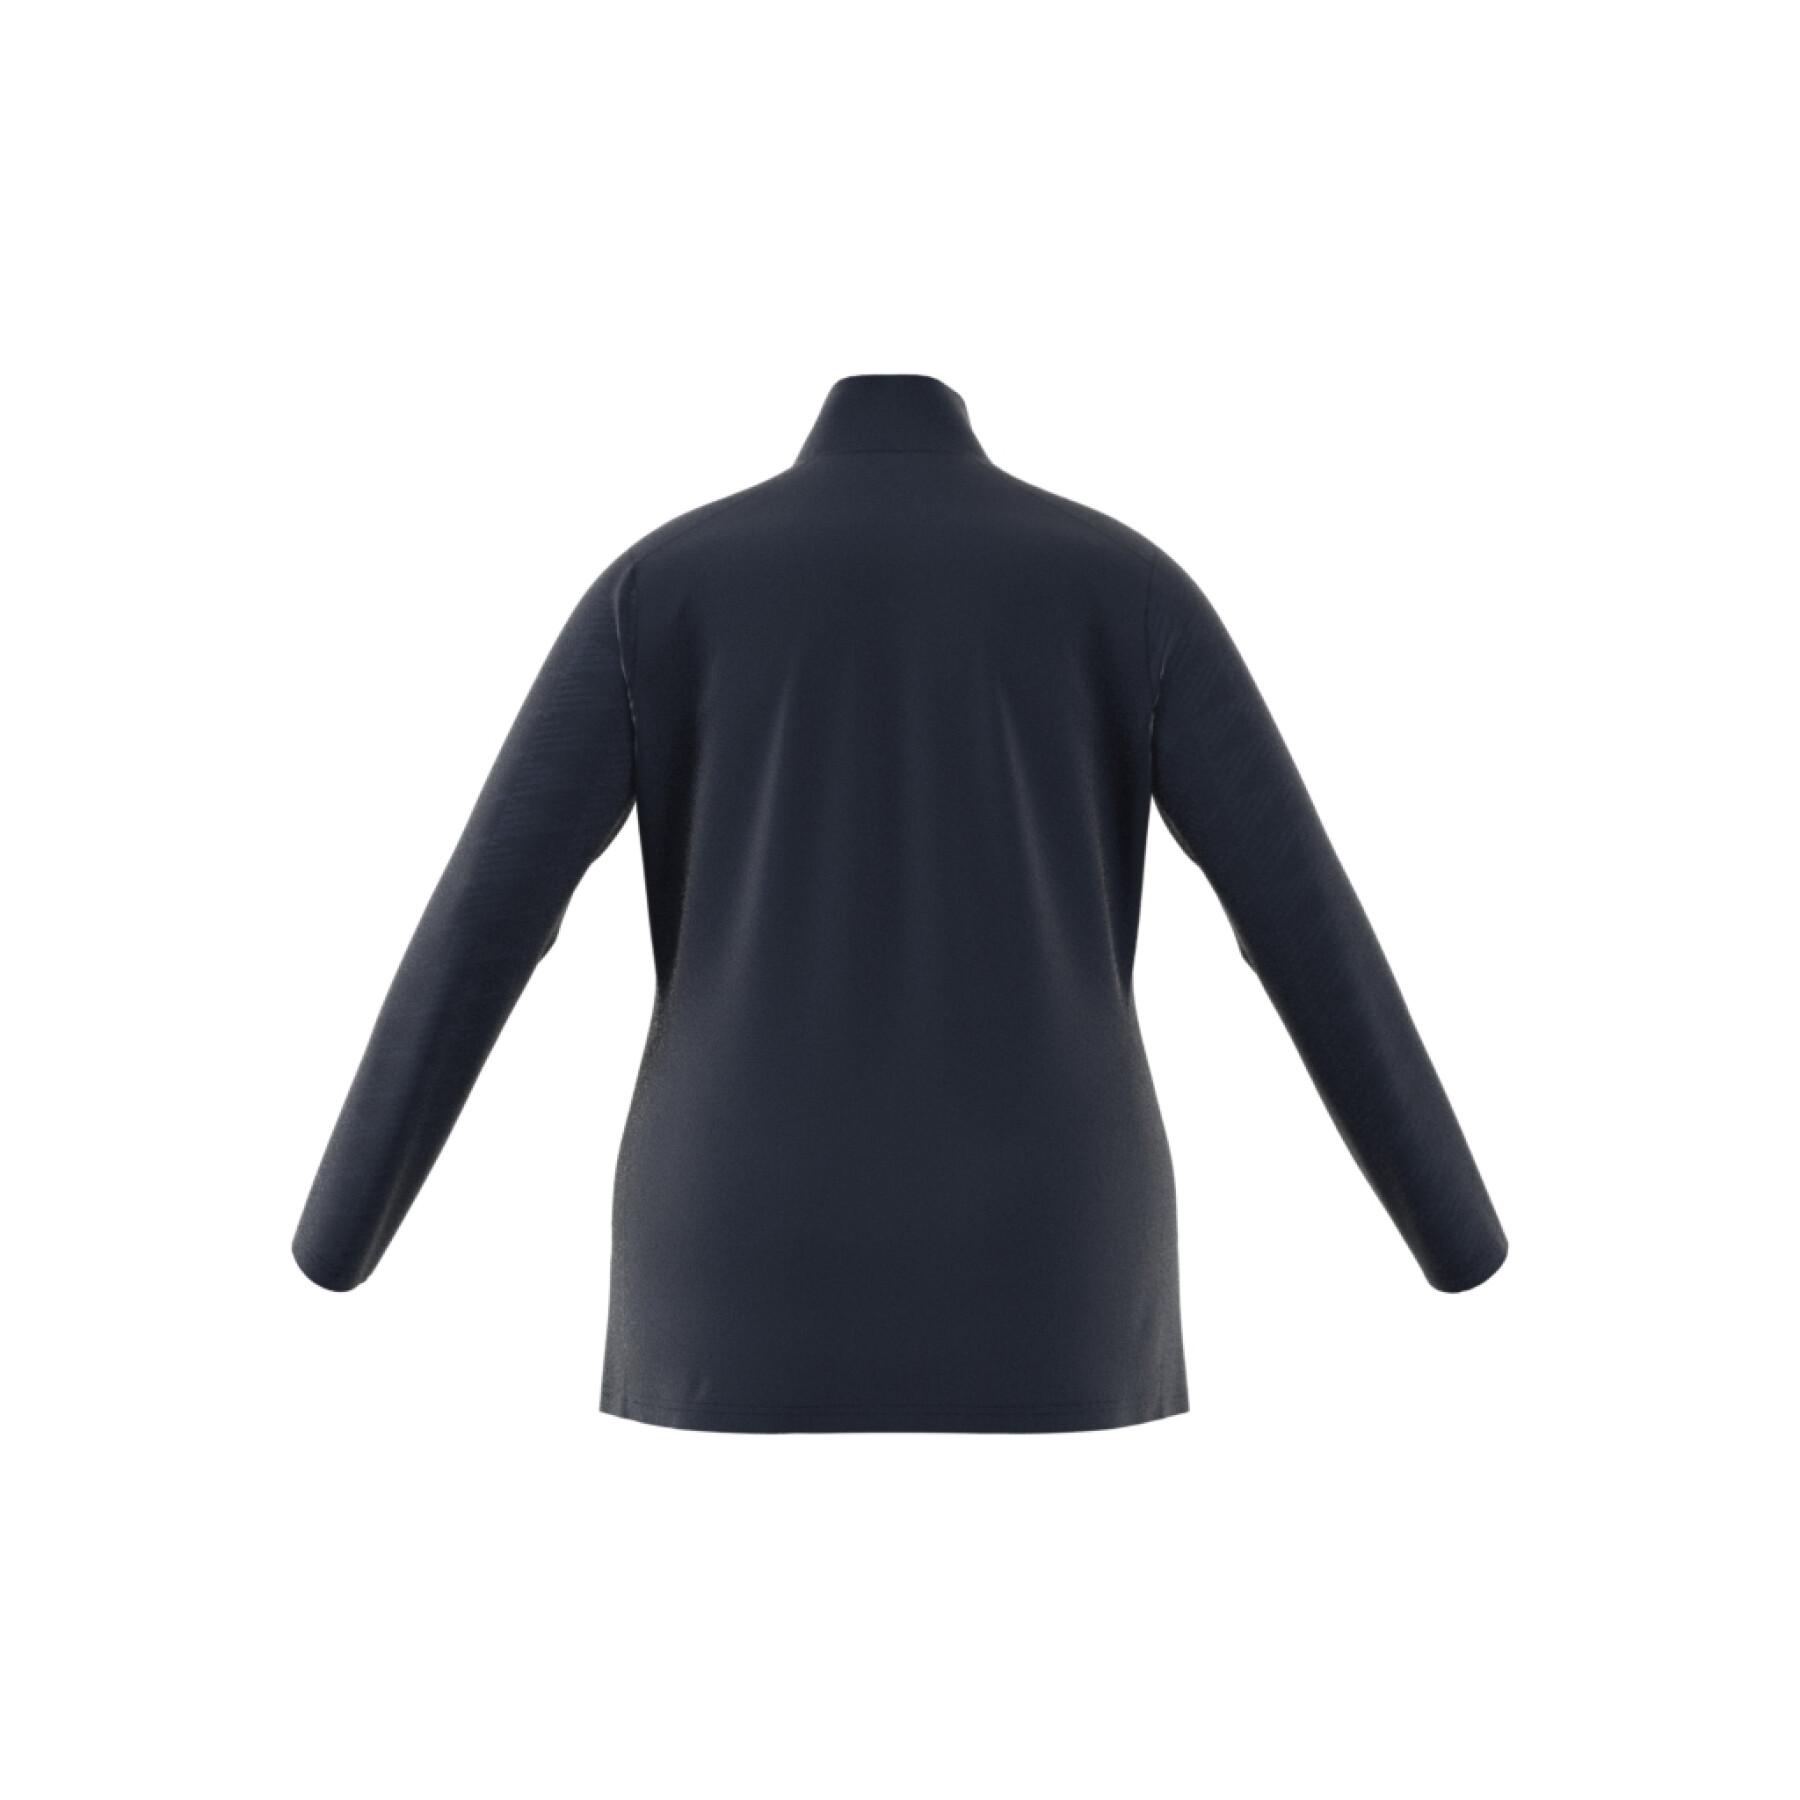 Damska bluza rozpinana do połowy adidas Terrex Multi (GT)